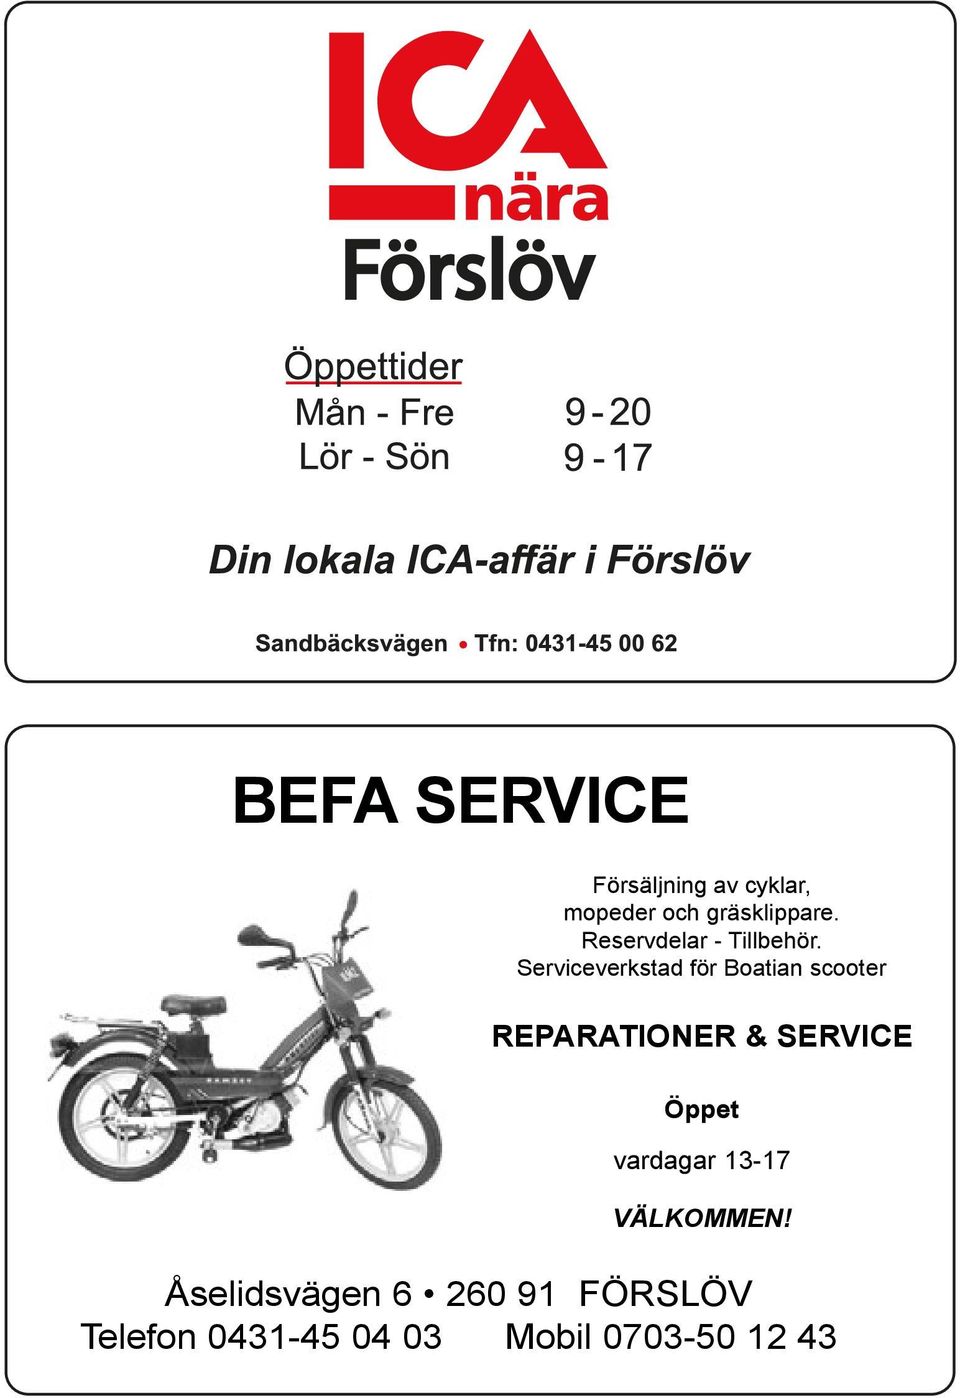 Serviceverkstad för Boatian scooter REPARATIONER & SERVICE